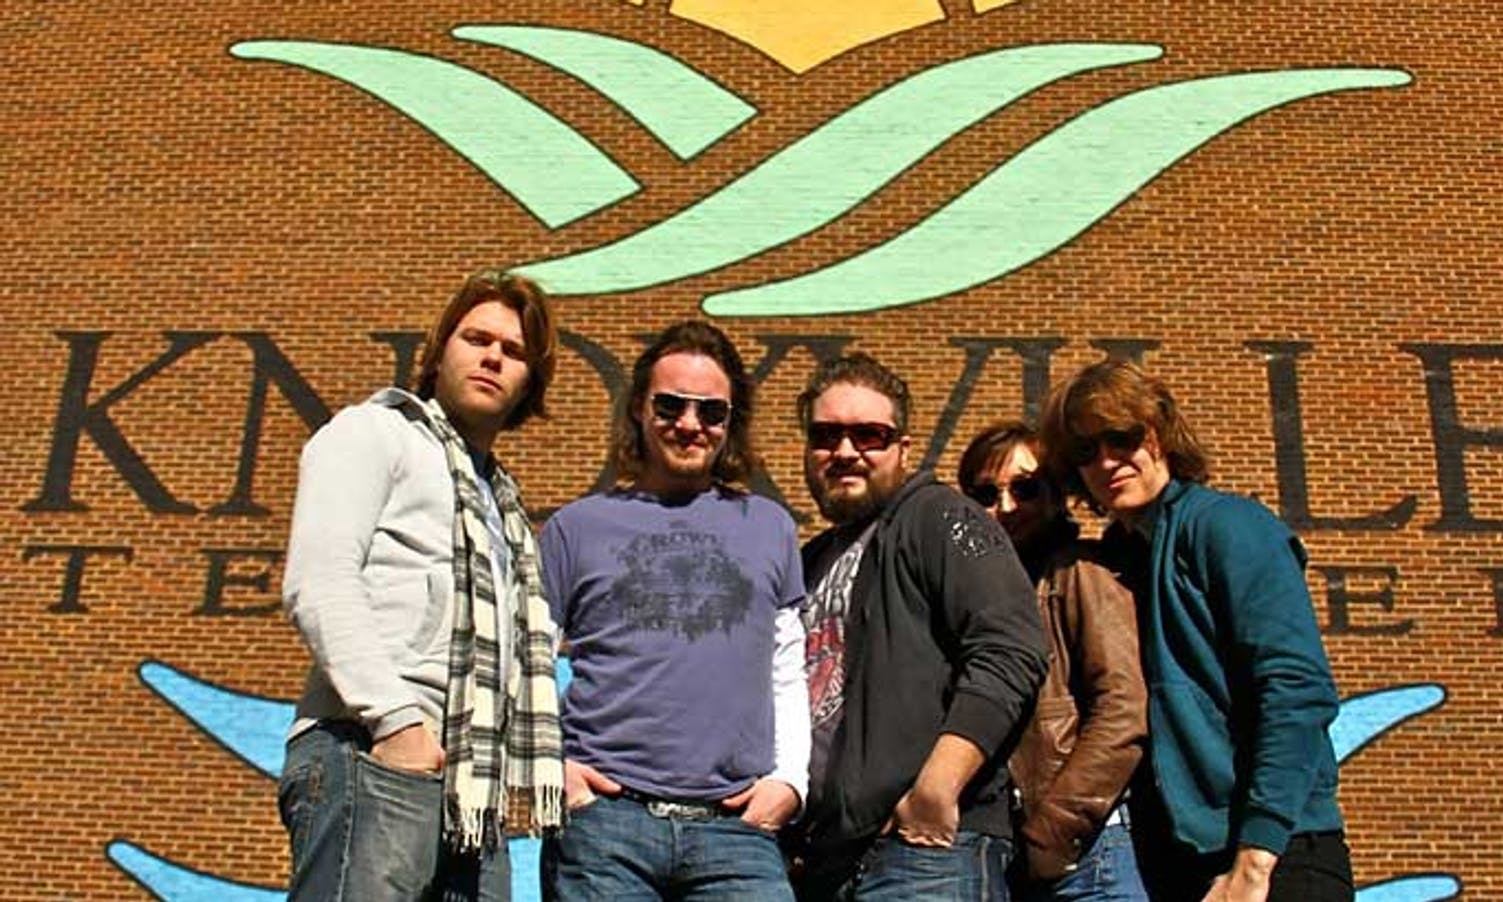 Etter turnéstart i Nashville gjekk turen via Knoxville til Atlanta. (Privat foto)